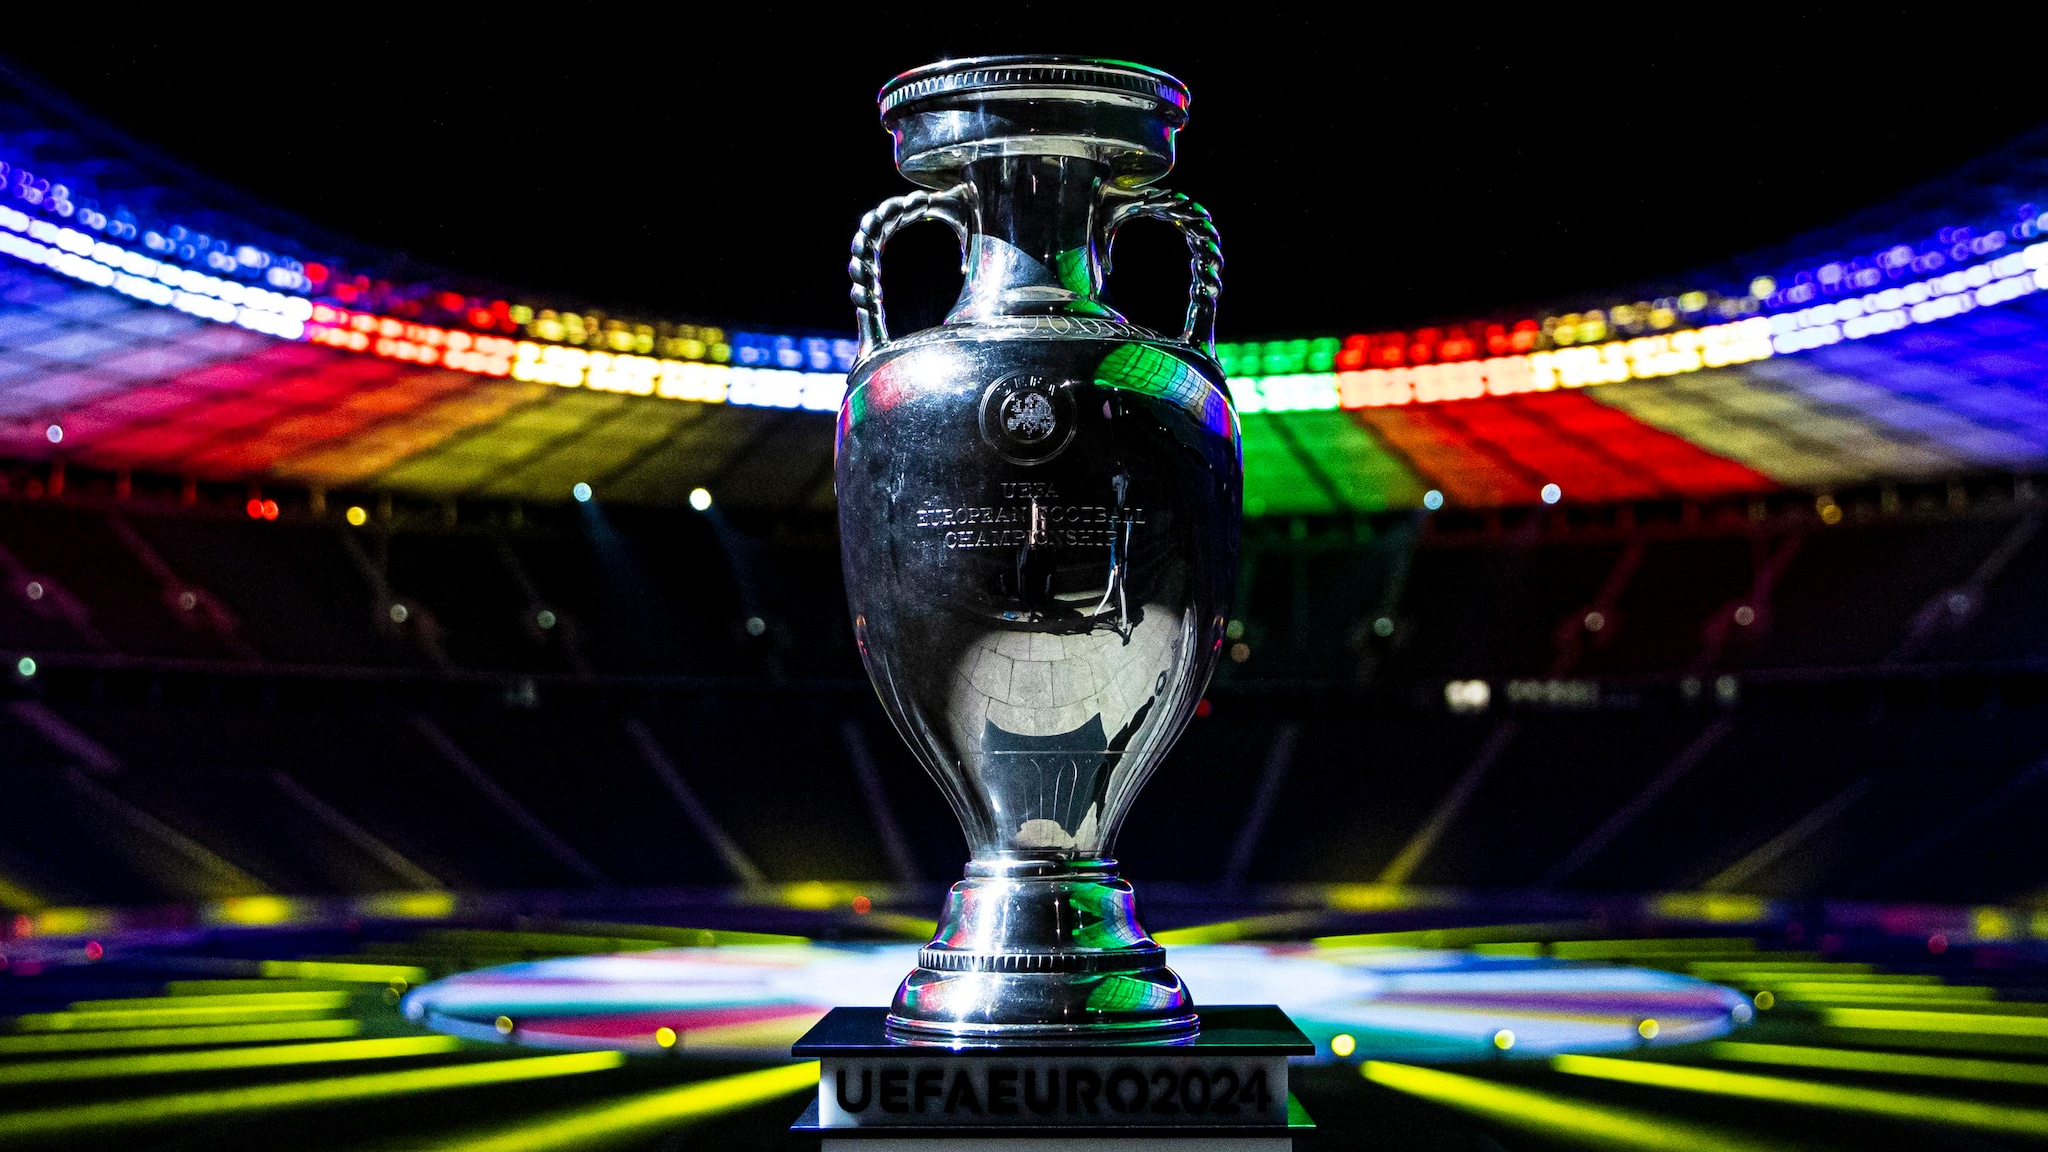 Svelato il logo di UEFA EURO 2024 con uno spettacolare gioco di luci